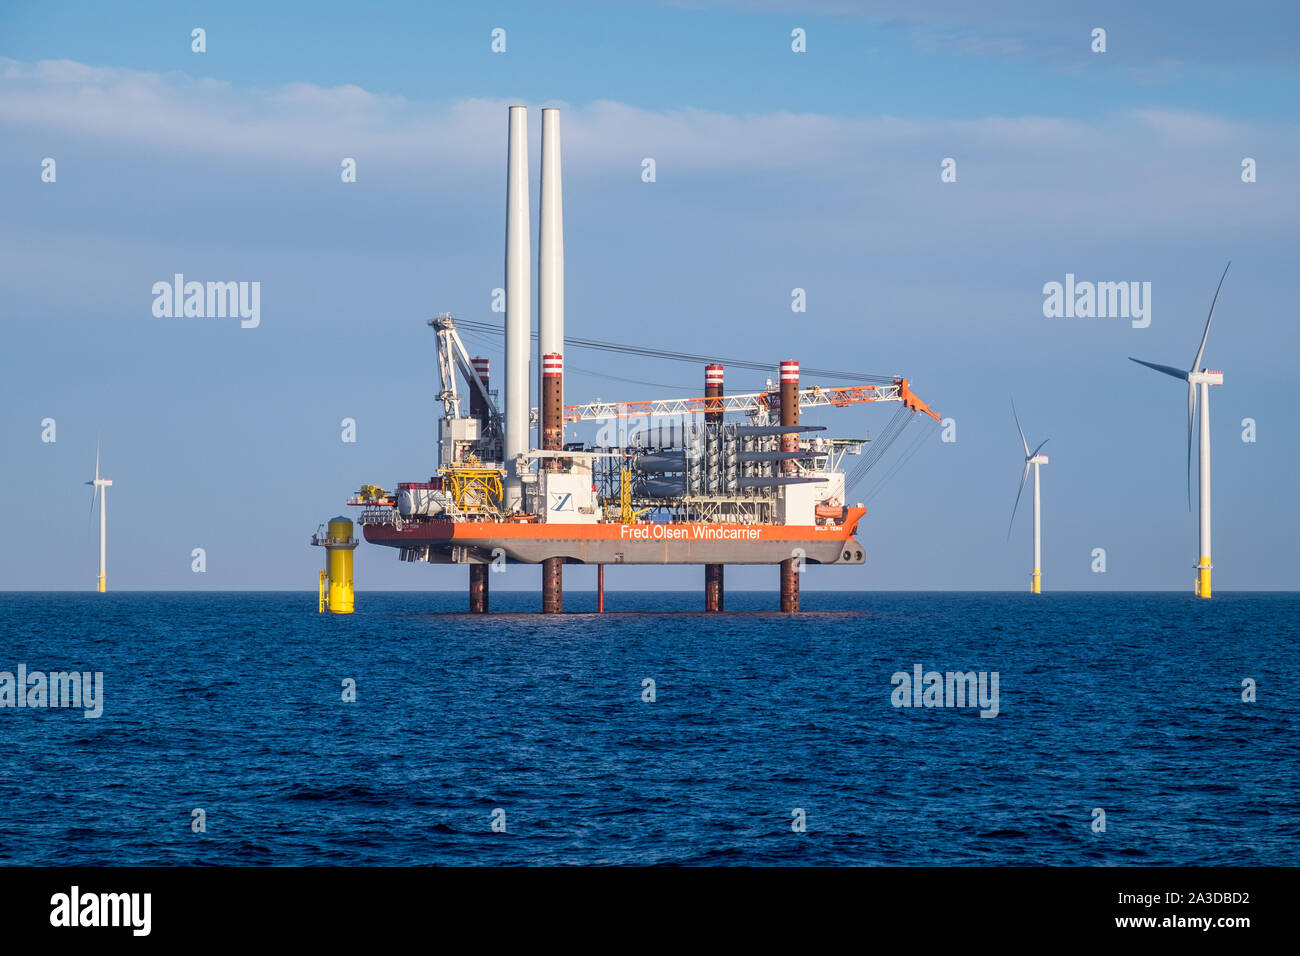 Eine Windenergieanlage installation Schiff, Fett Tern, bei der Arbeit an der Errichtung von Siemens Windenergieanlagen auf hornsea Projekt einen Offshore-windpark Stockfoto